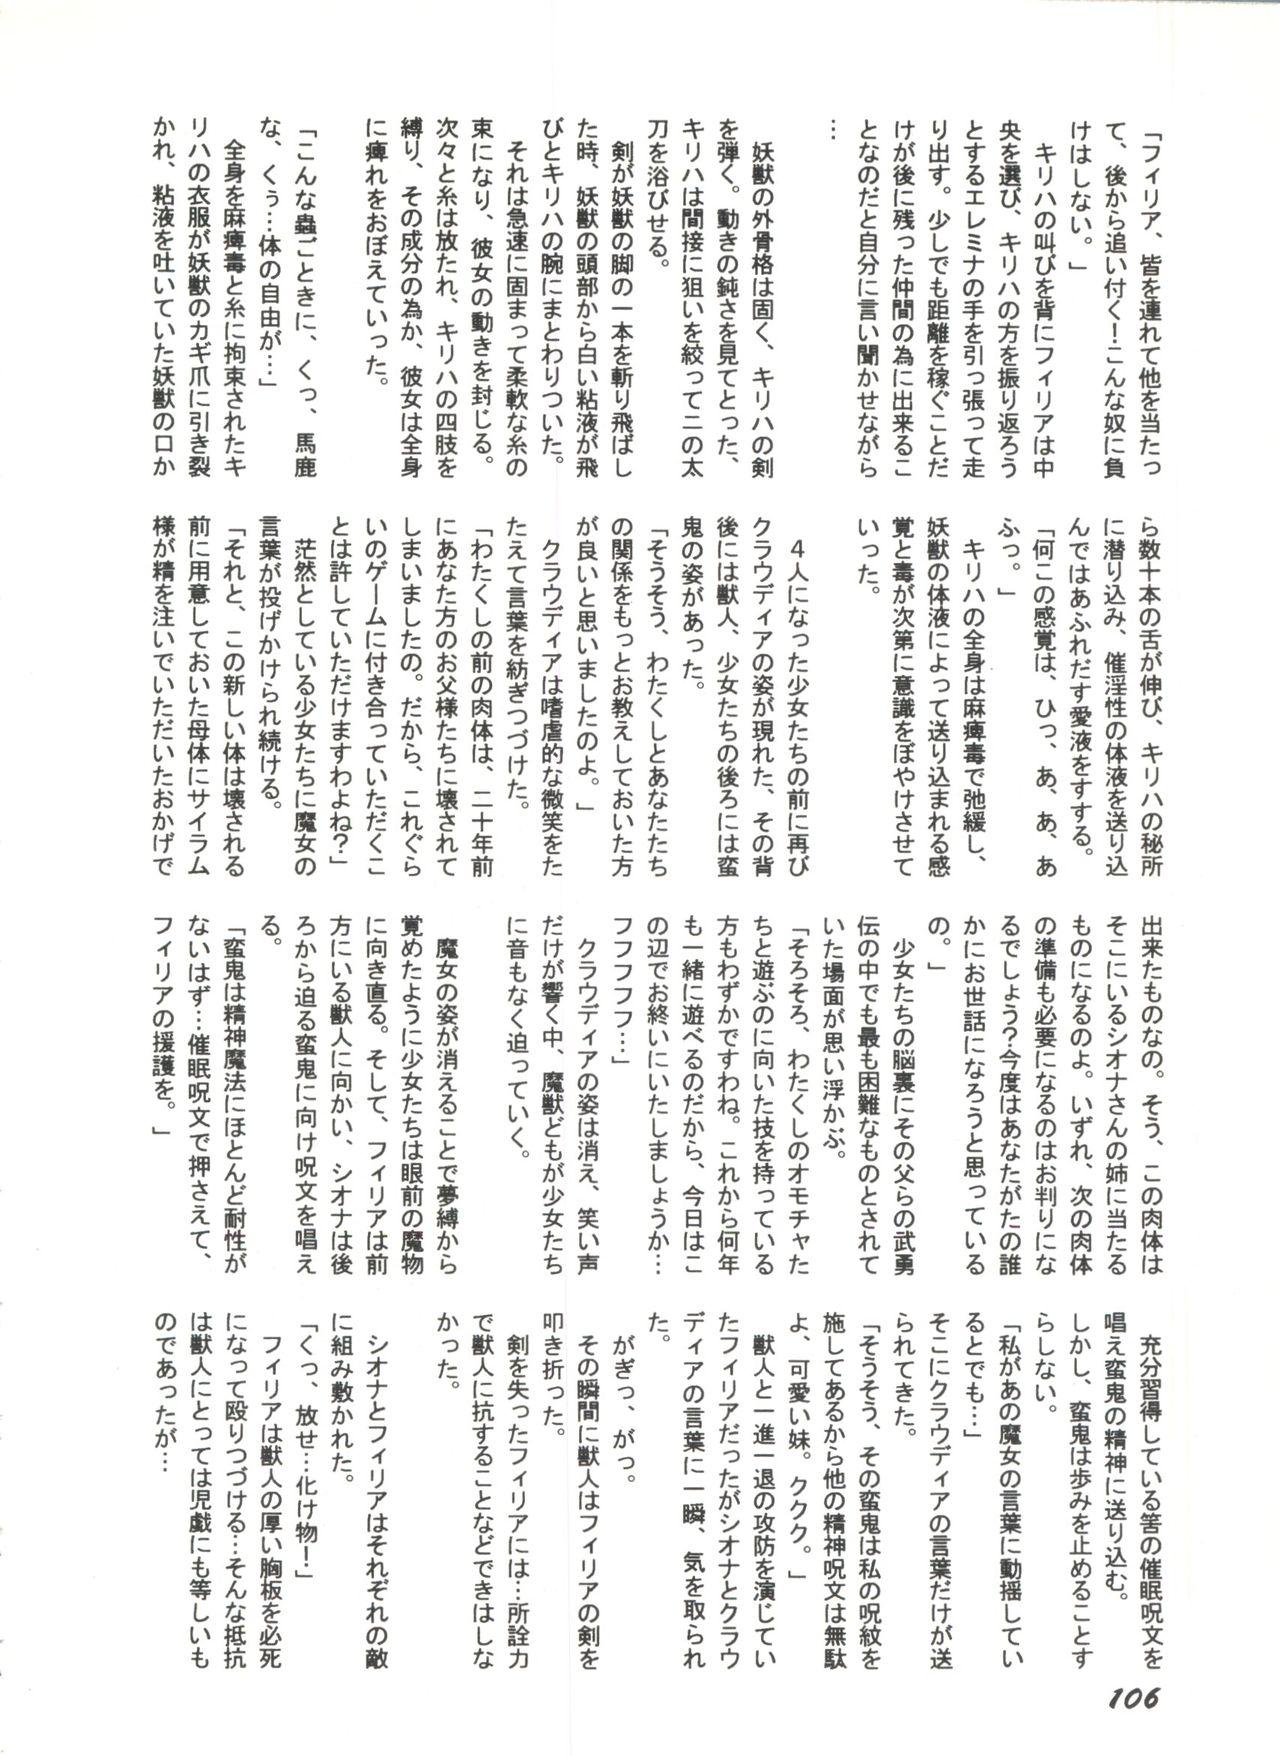 Bishoujo Doujinshi Anthology 1 107